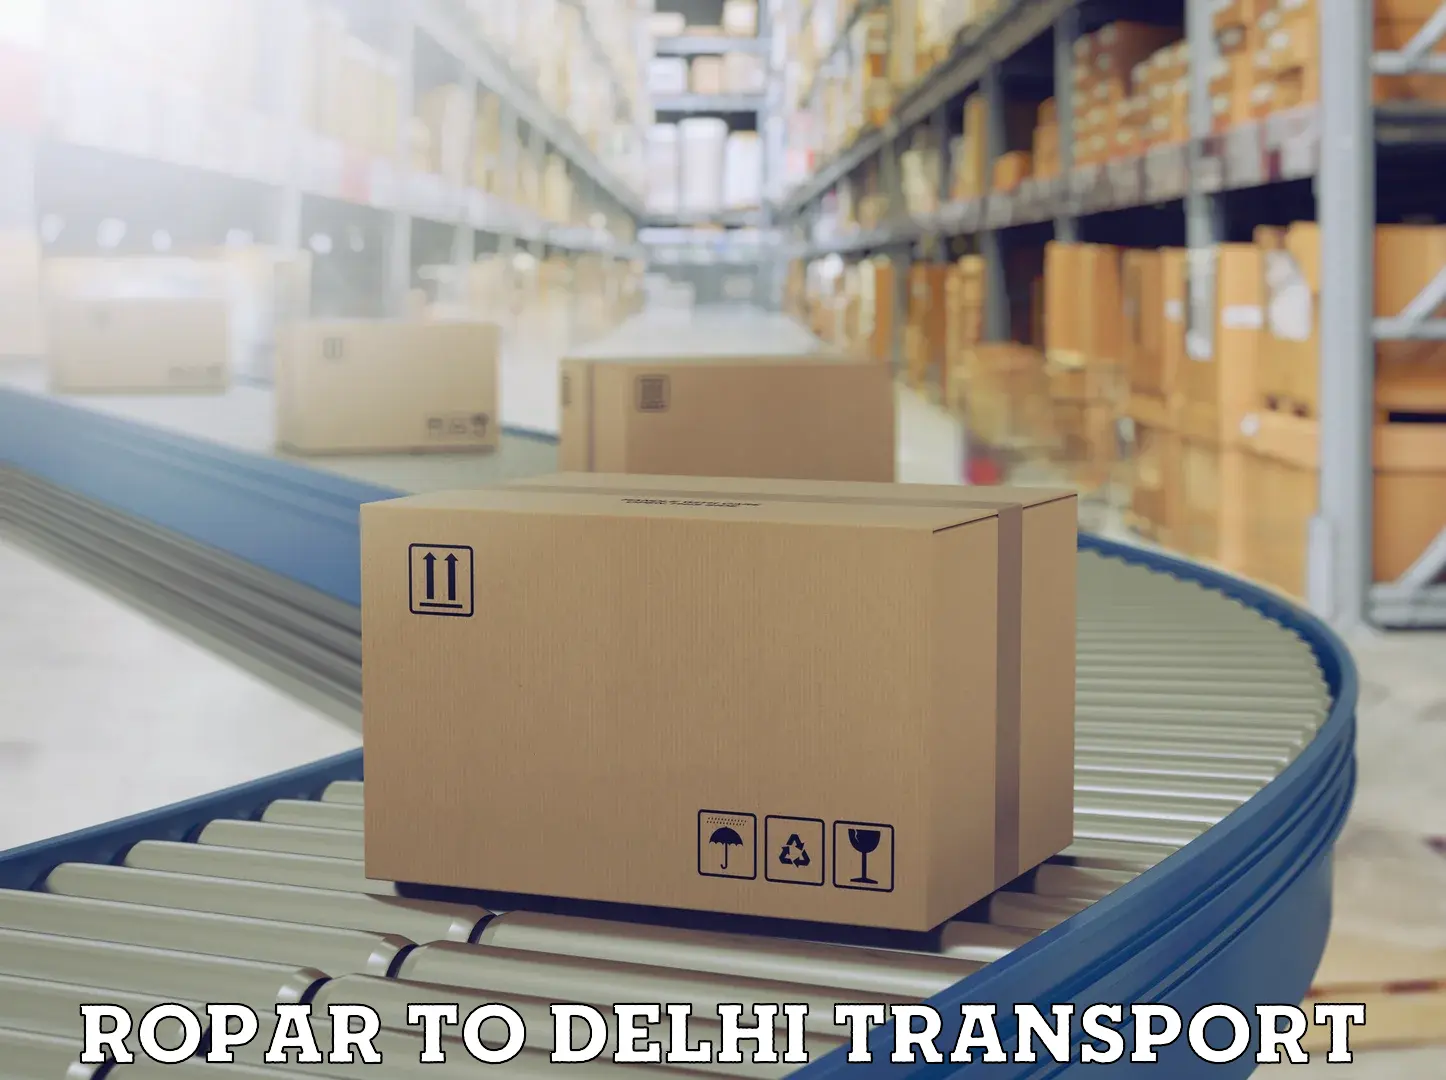 Bike shipping service Ropar to Delhi